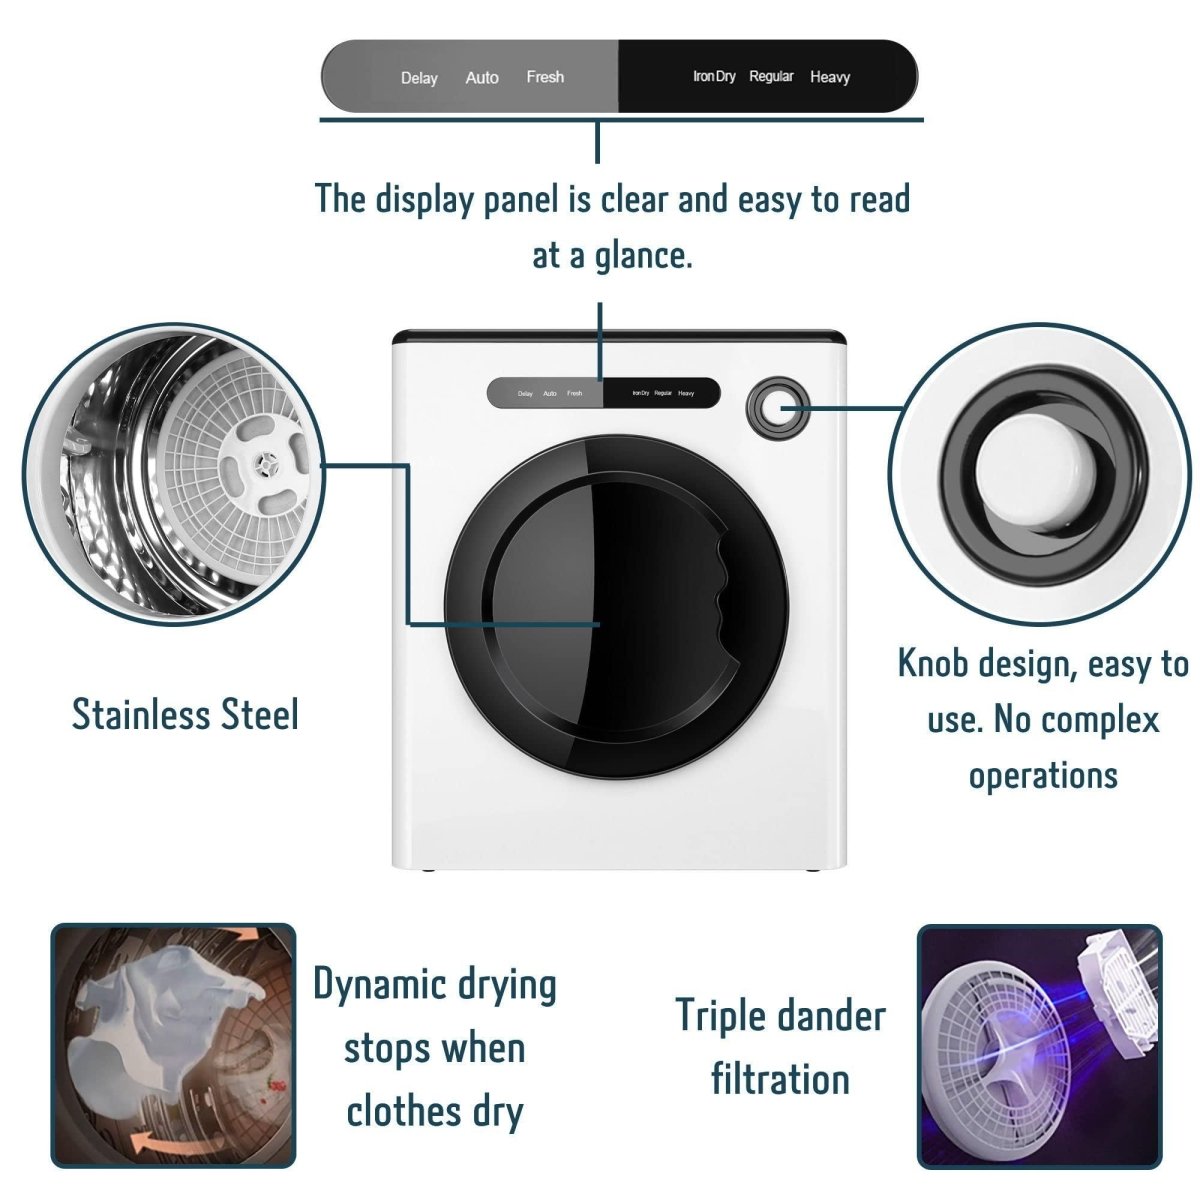 Dessiz 11lb Portable clothes dryer, compact size 1.6cu.ft, Smart Digital Control -White - Dessiz